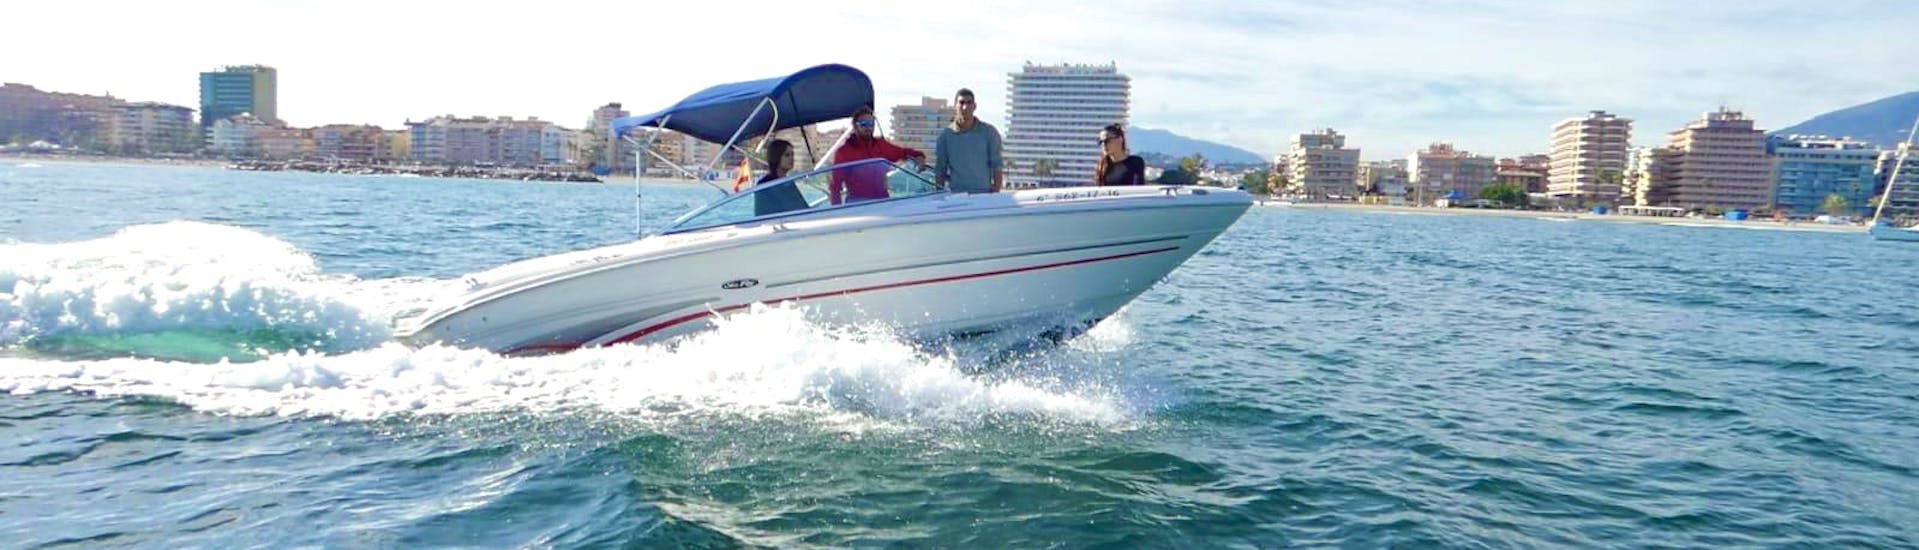 Ein luxuriöses SEA RAY SELECT 200 Boot, das während eines Bootsverleihs in Marbella für bis zu 8 Personen mit Führerschein mit Marbella Renting Boat auf dem Alboran Meer kreuzt.